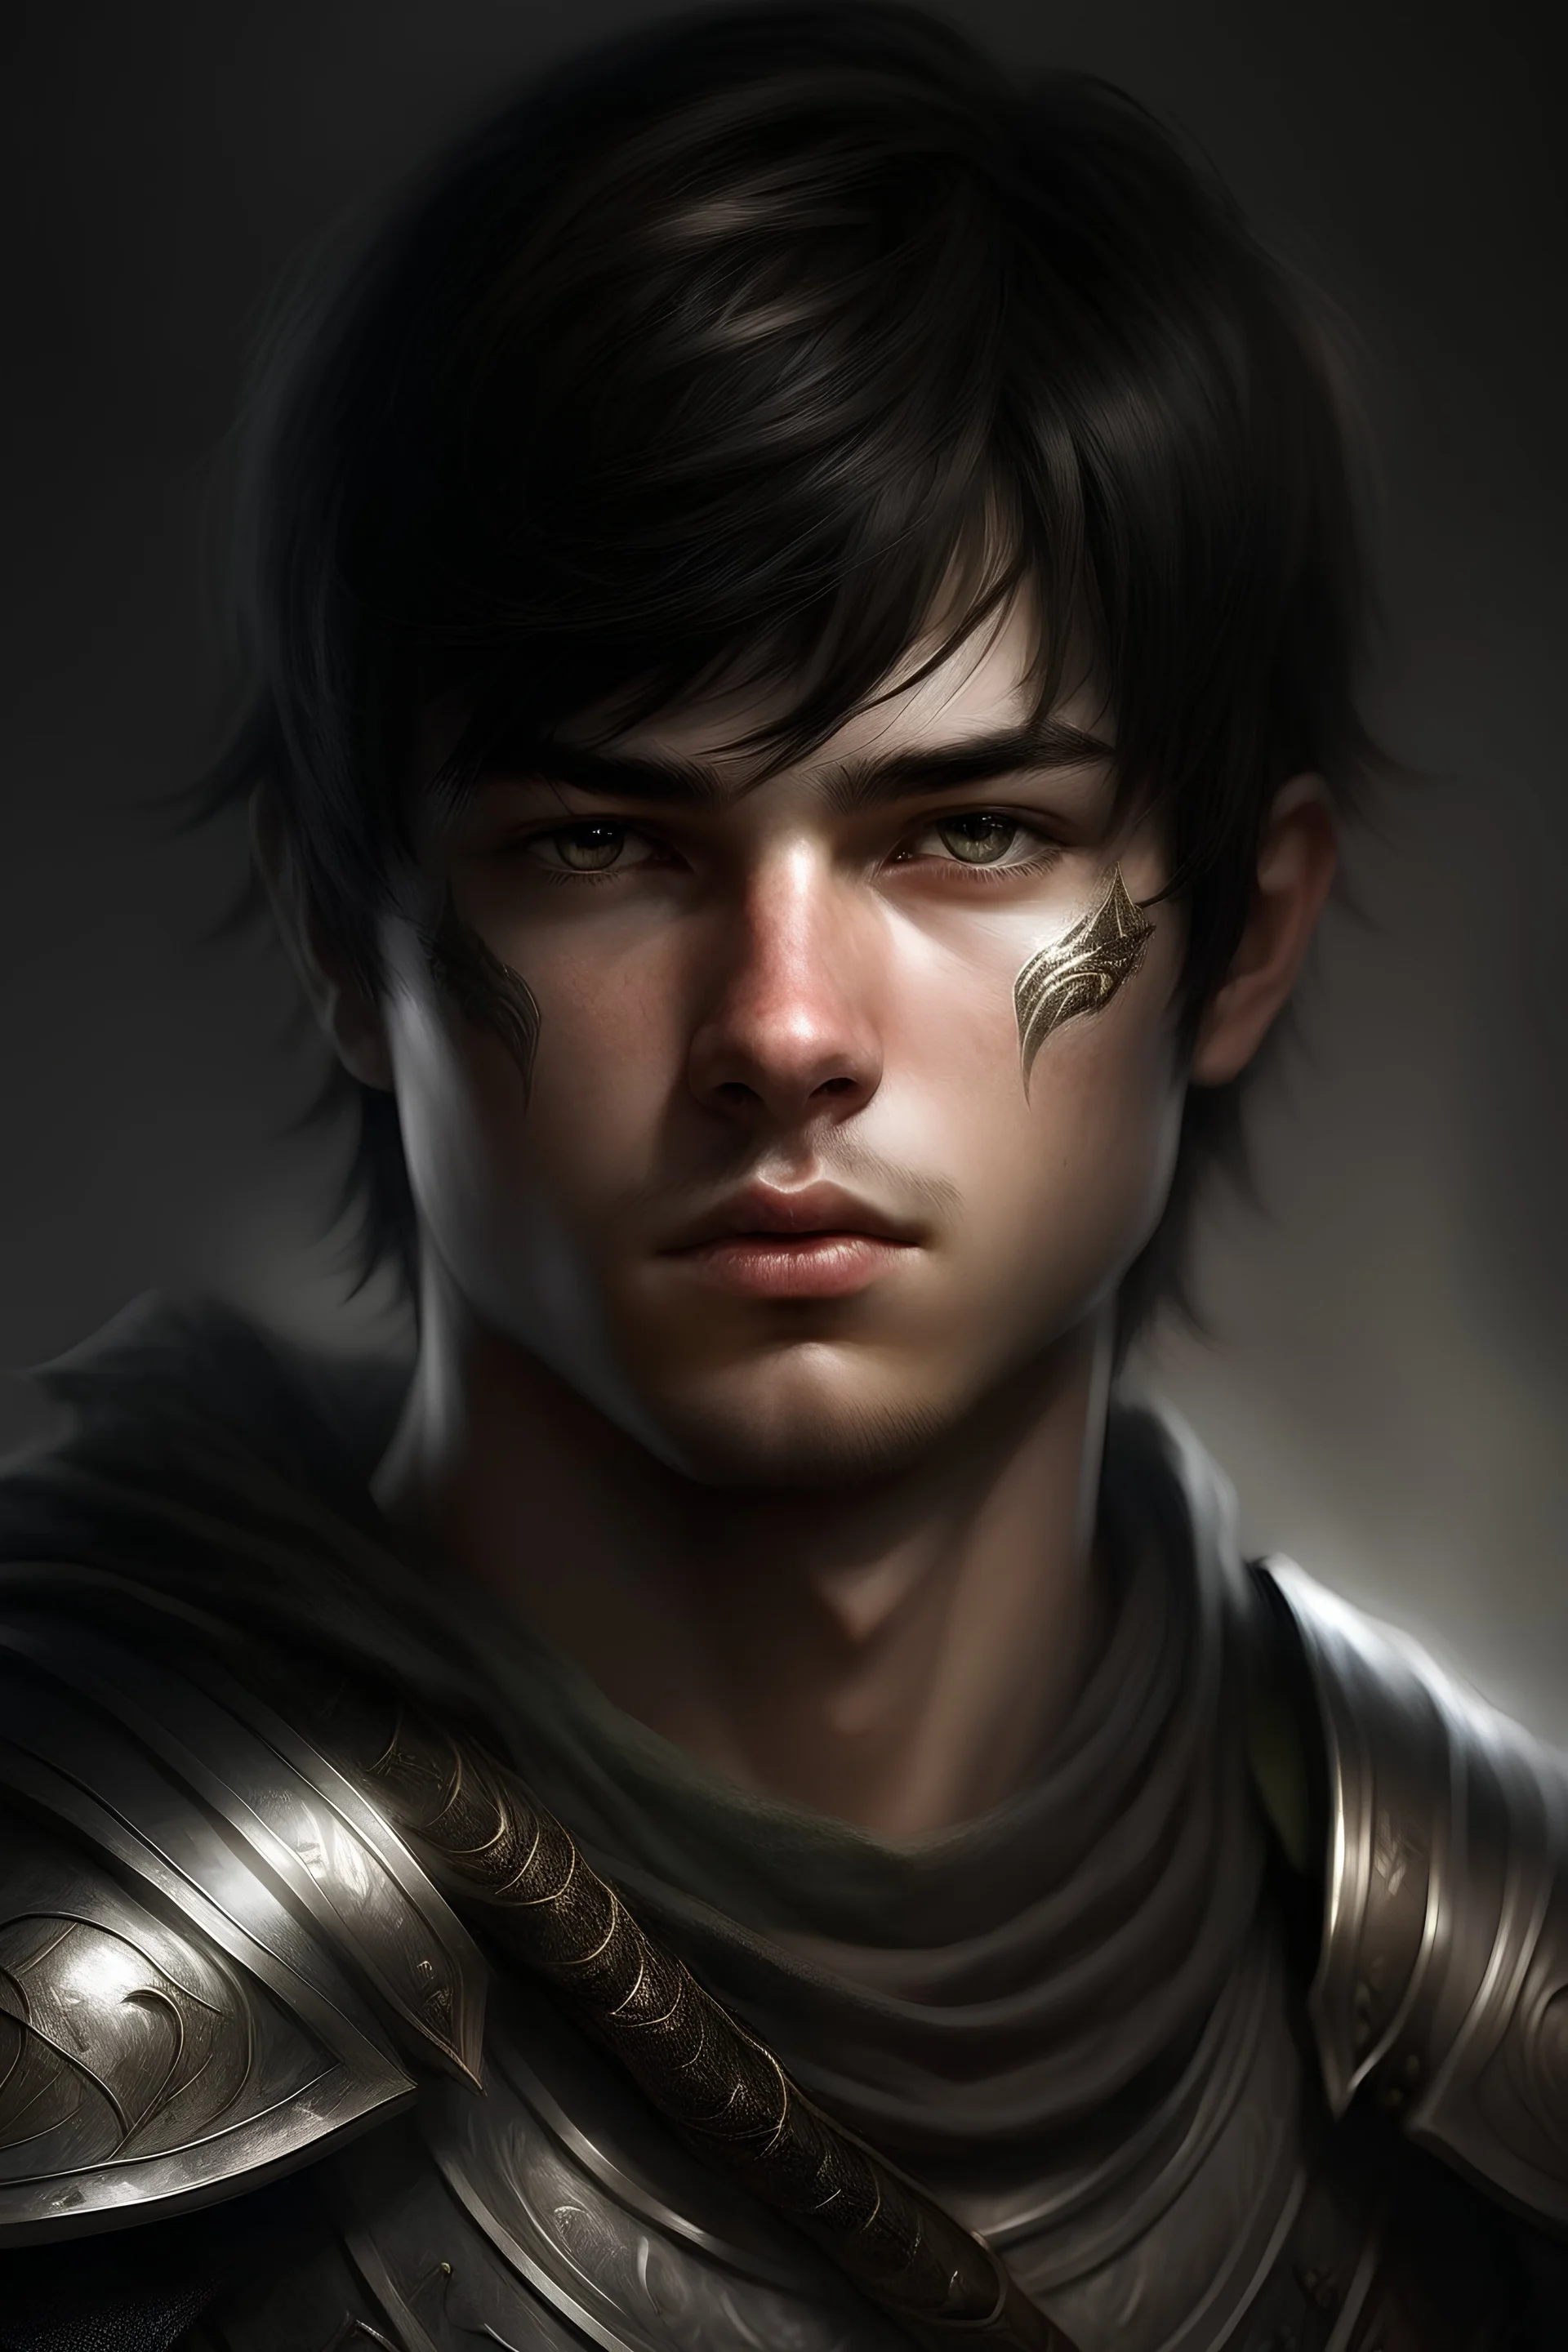 Ein Fantasy Porträt von einem jungen Krieger mit kurzen, dunklen Haaren und silbernen Augen. Er hat ein eckiges Gesicht.